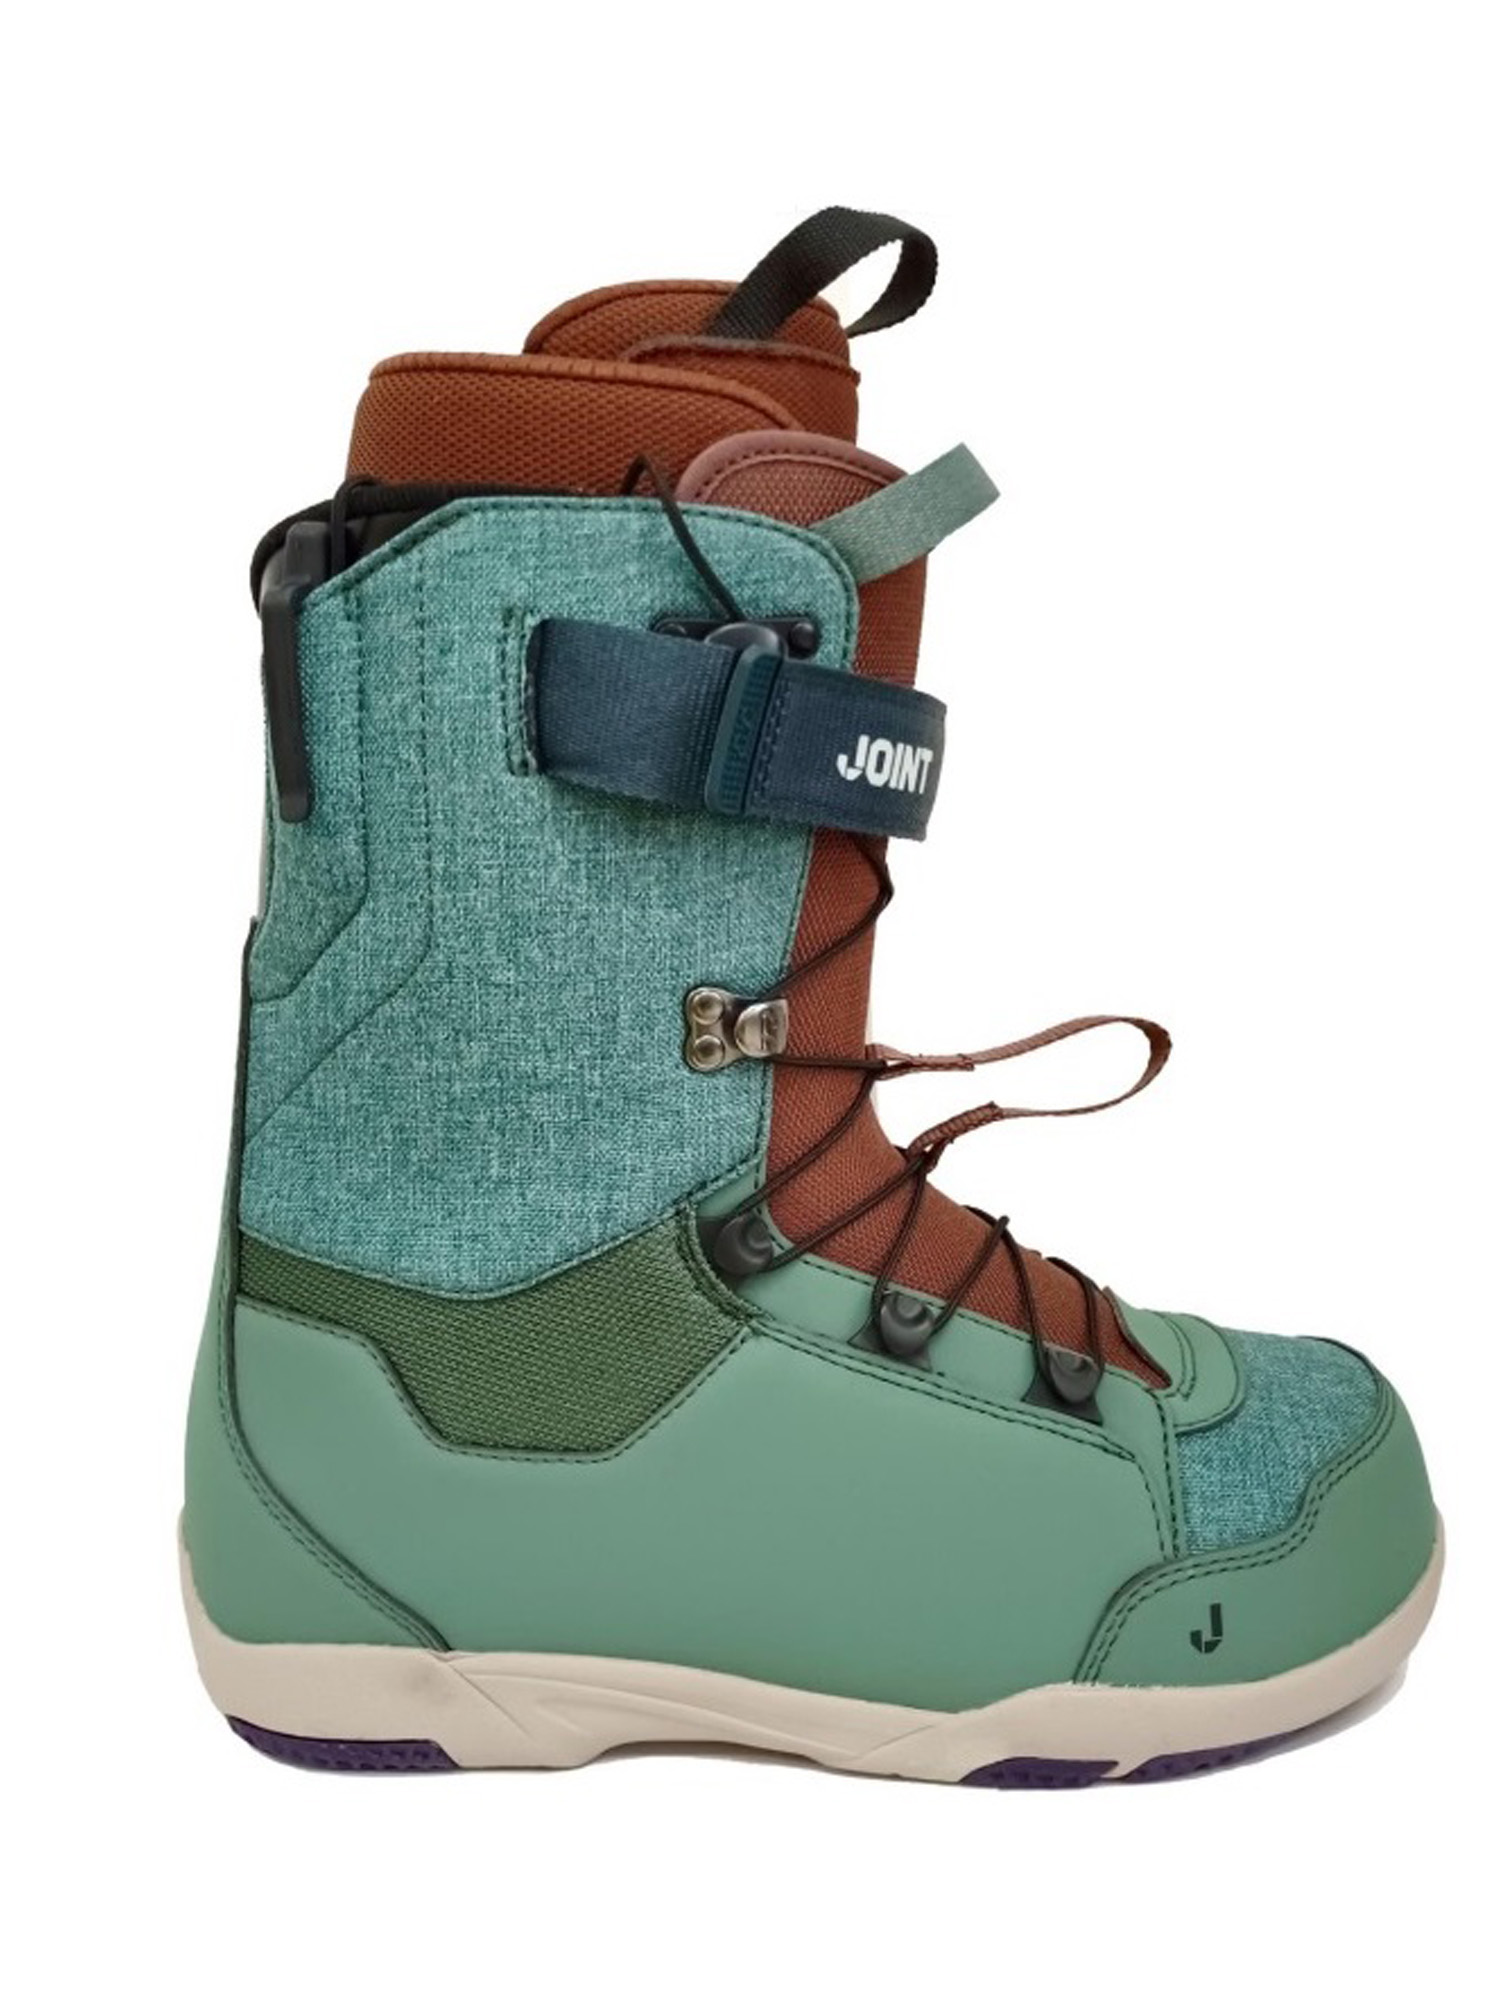 Ботинки для сноуборда Joint  At One's Ease 2023 dark green/brown 24 см